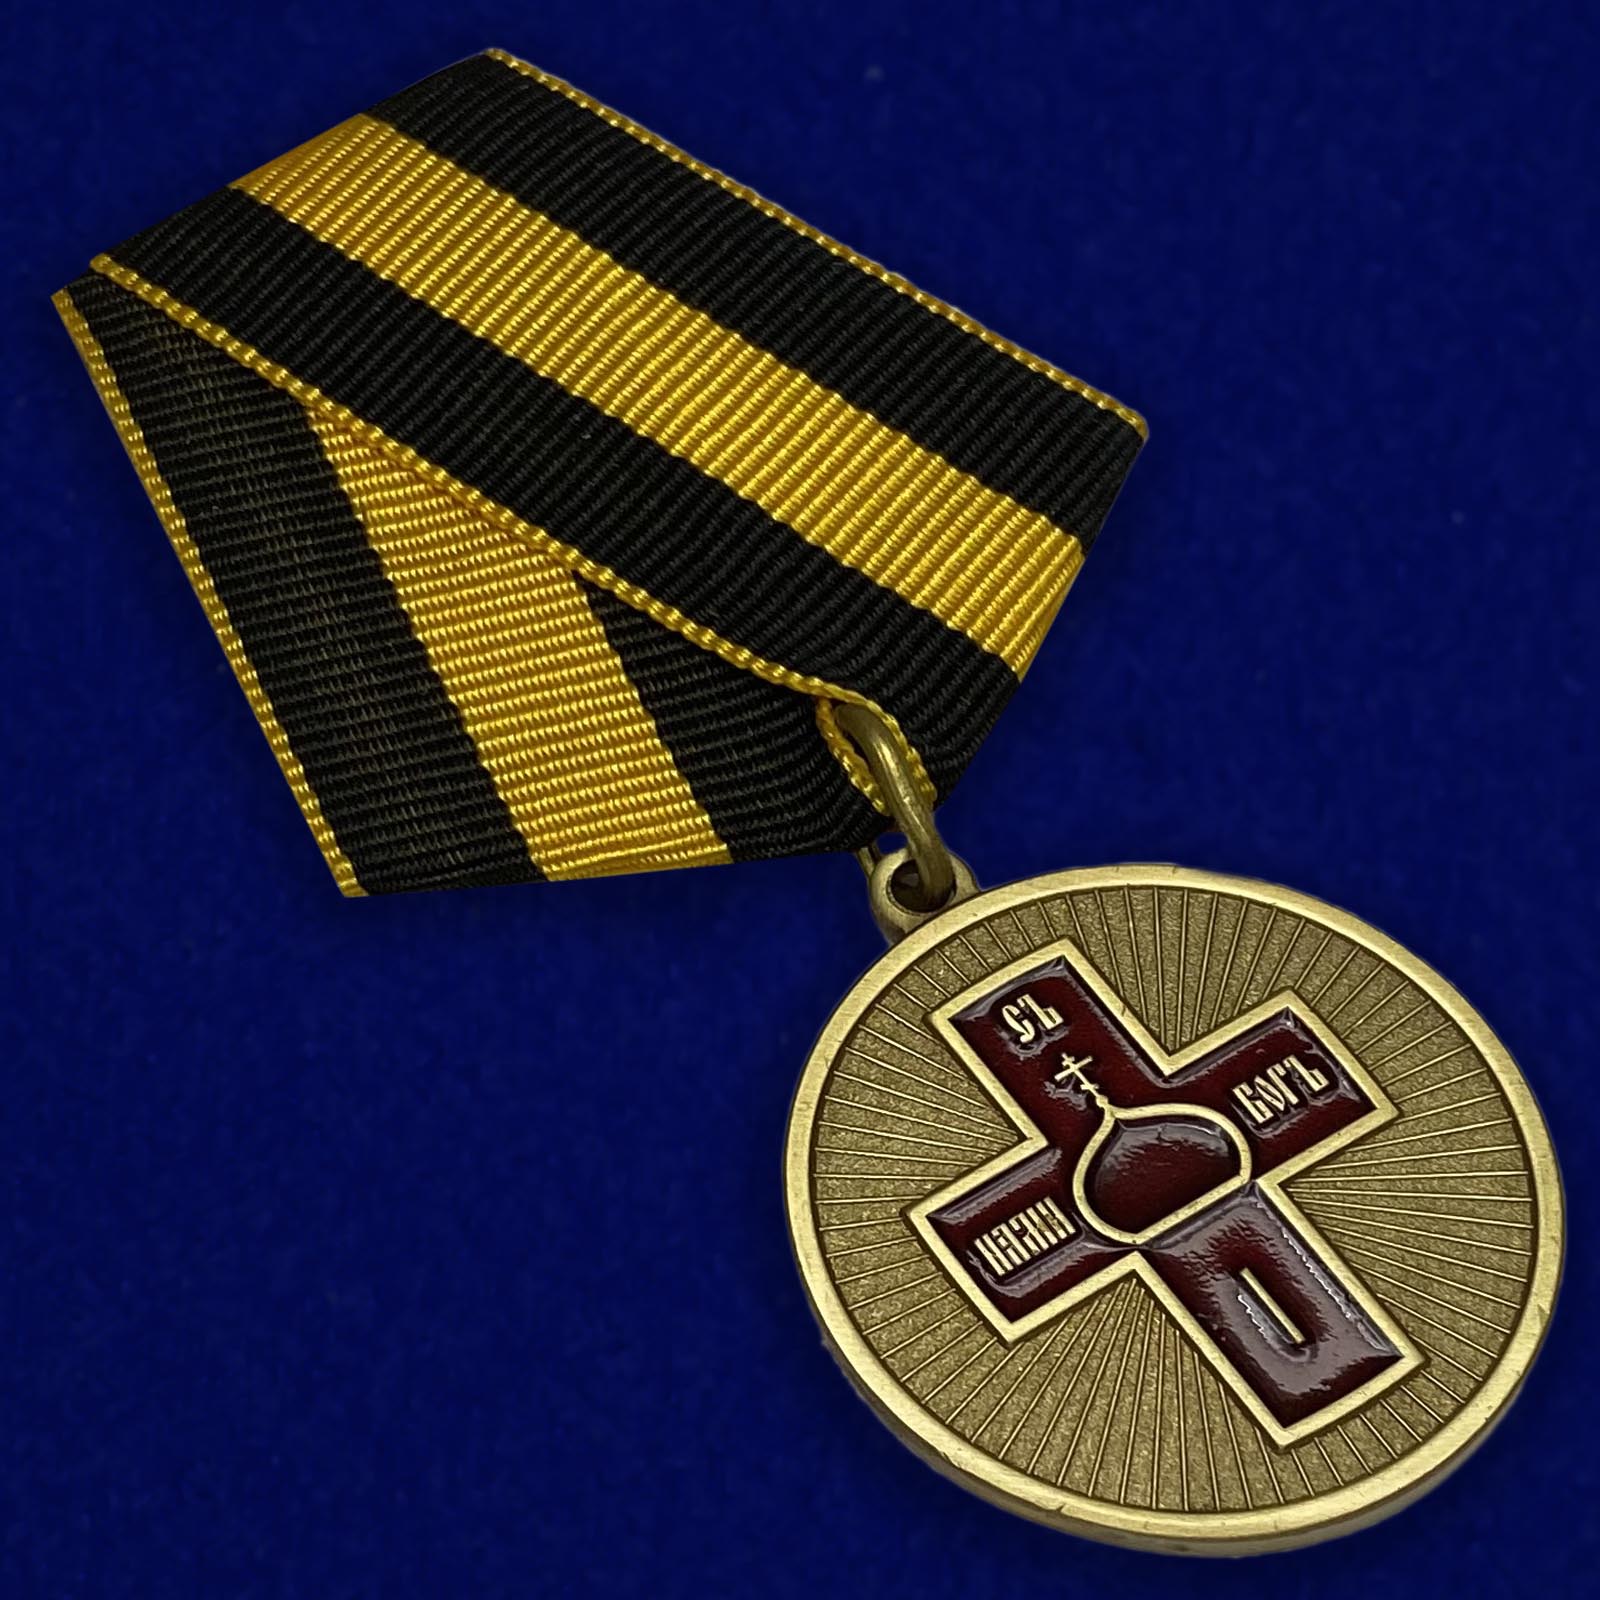 Купить медаль "Дело Веры" 1 степени в военторге Военпро